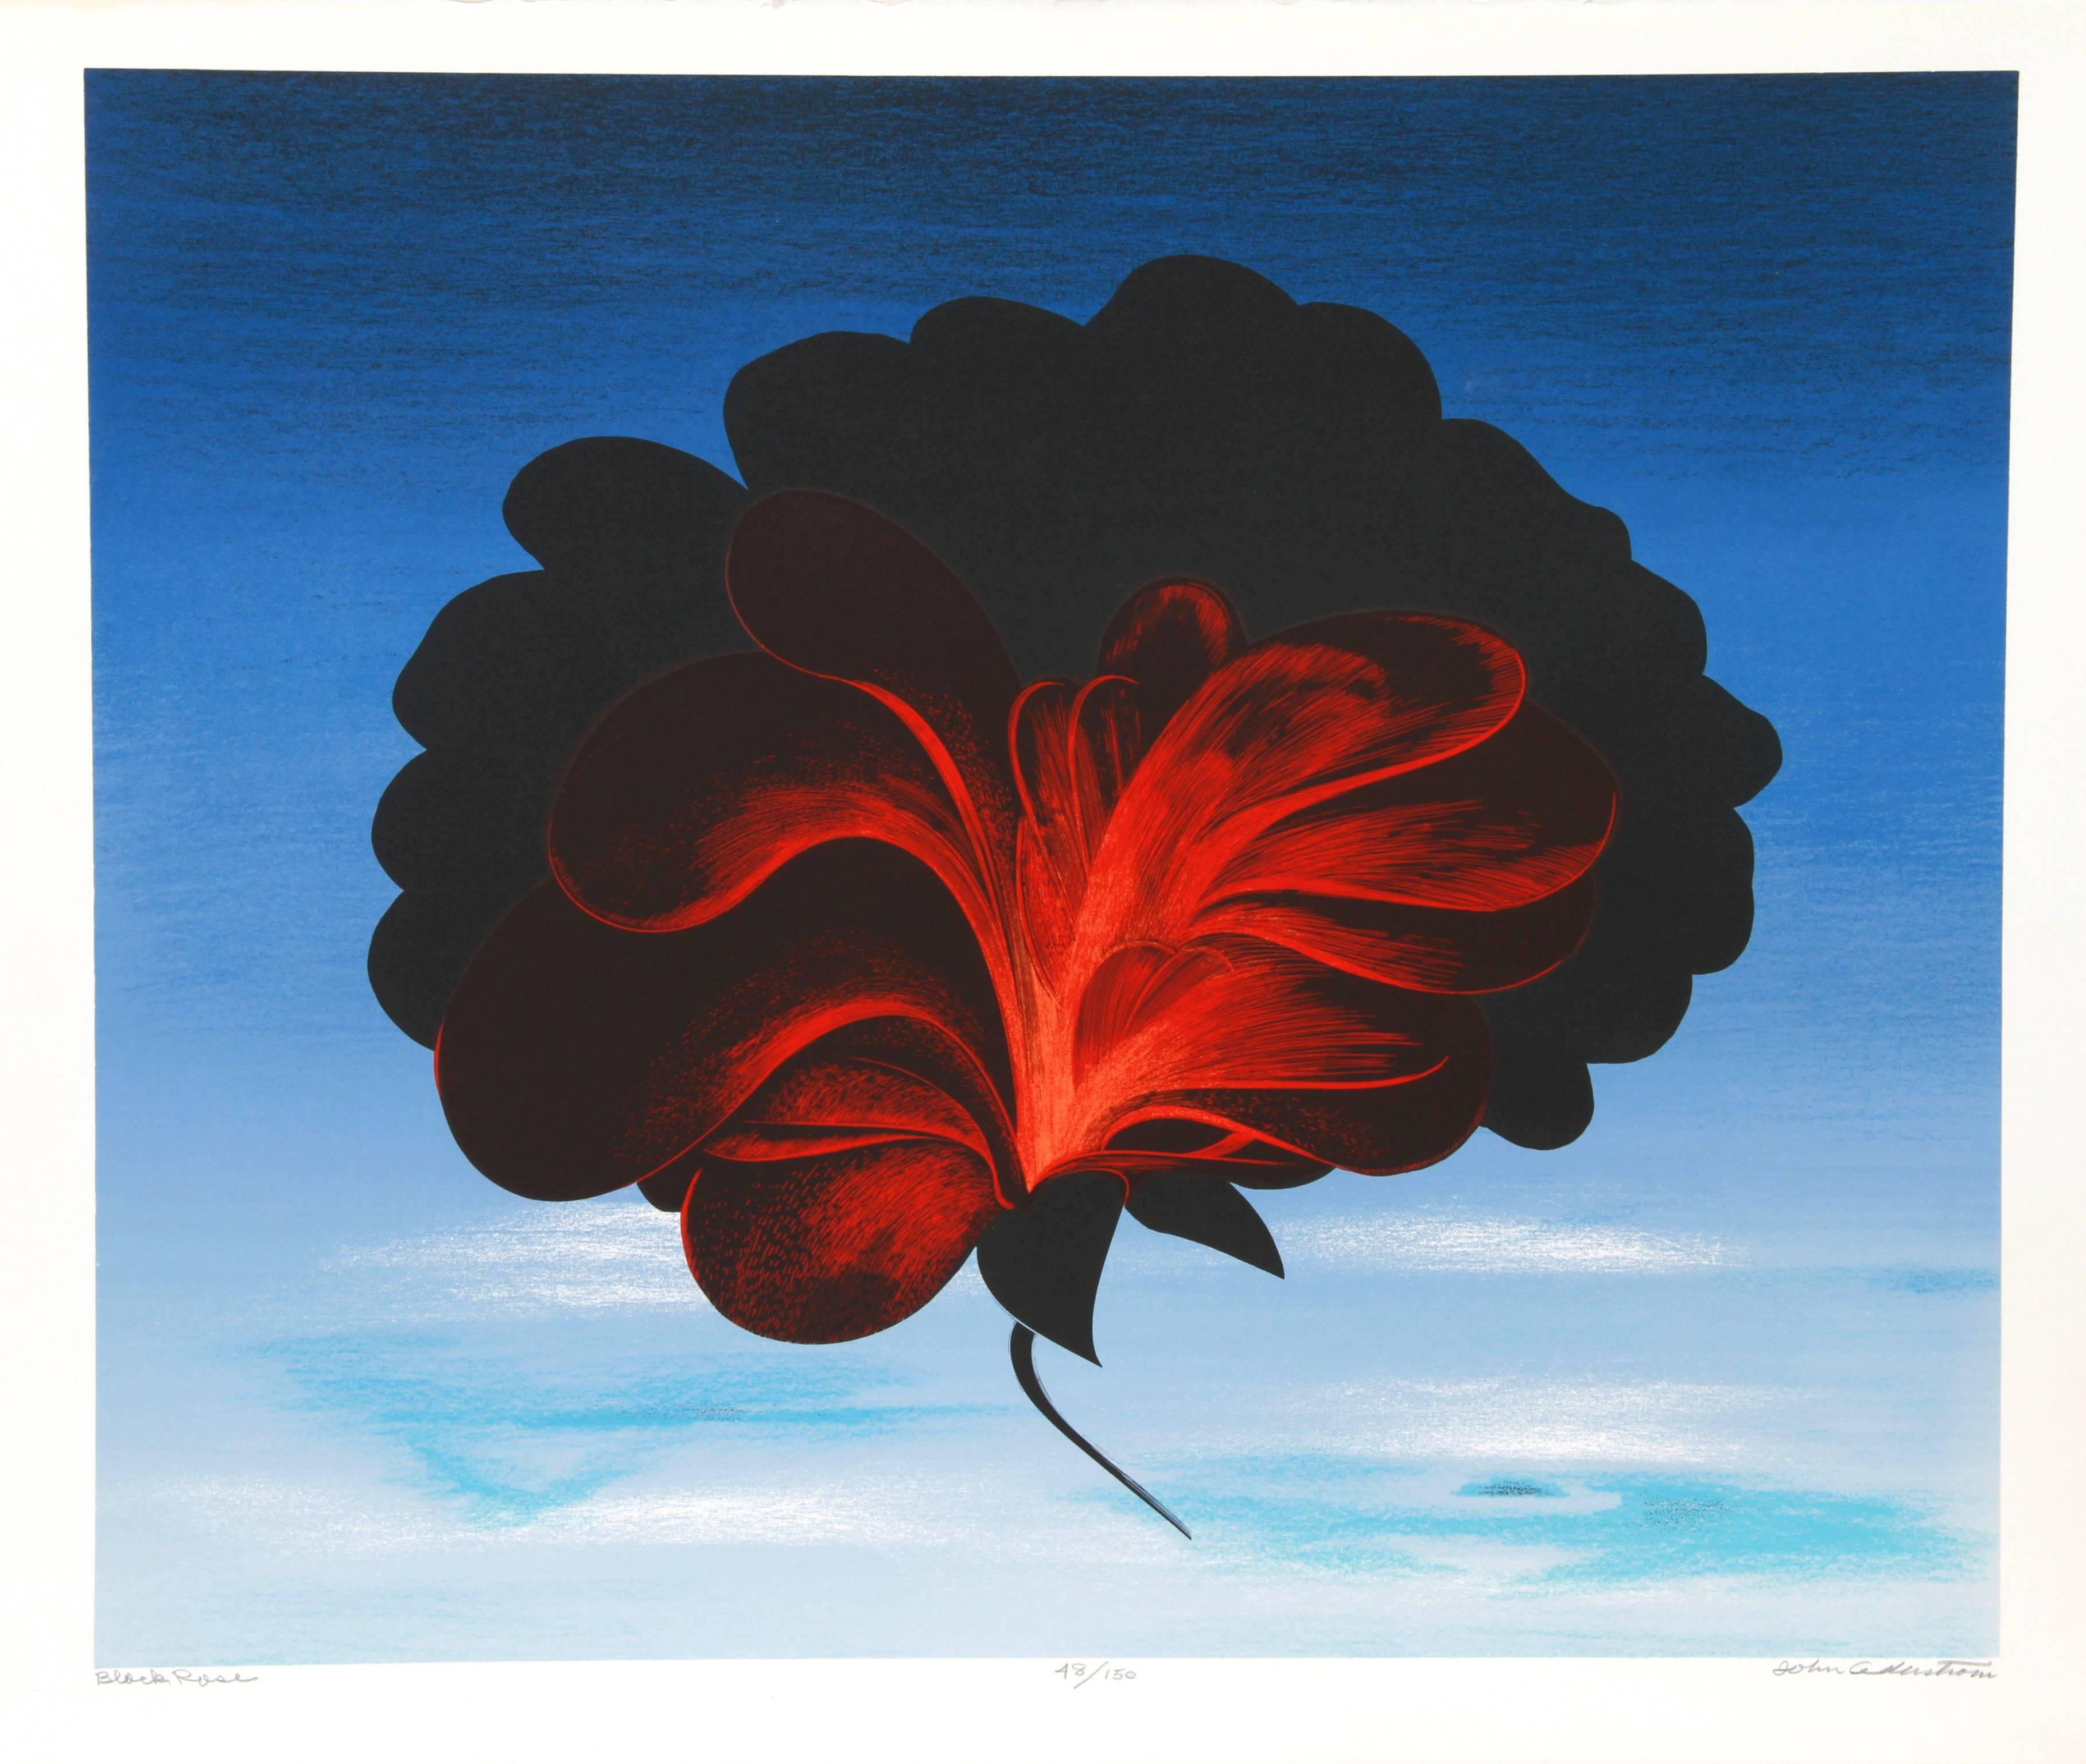 Artiste : John Cedarstrom
Titre : Rose noire
Année : vers 1980 
Médium : Sérigraphie, signée au crayon
Edition : 150, AP
Taille du papier :  22 x 30 pouces